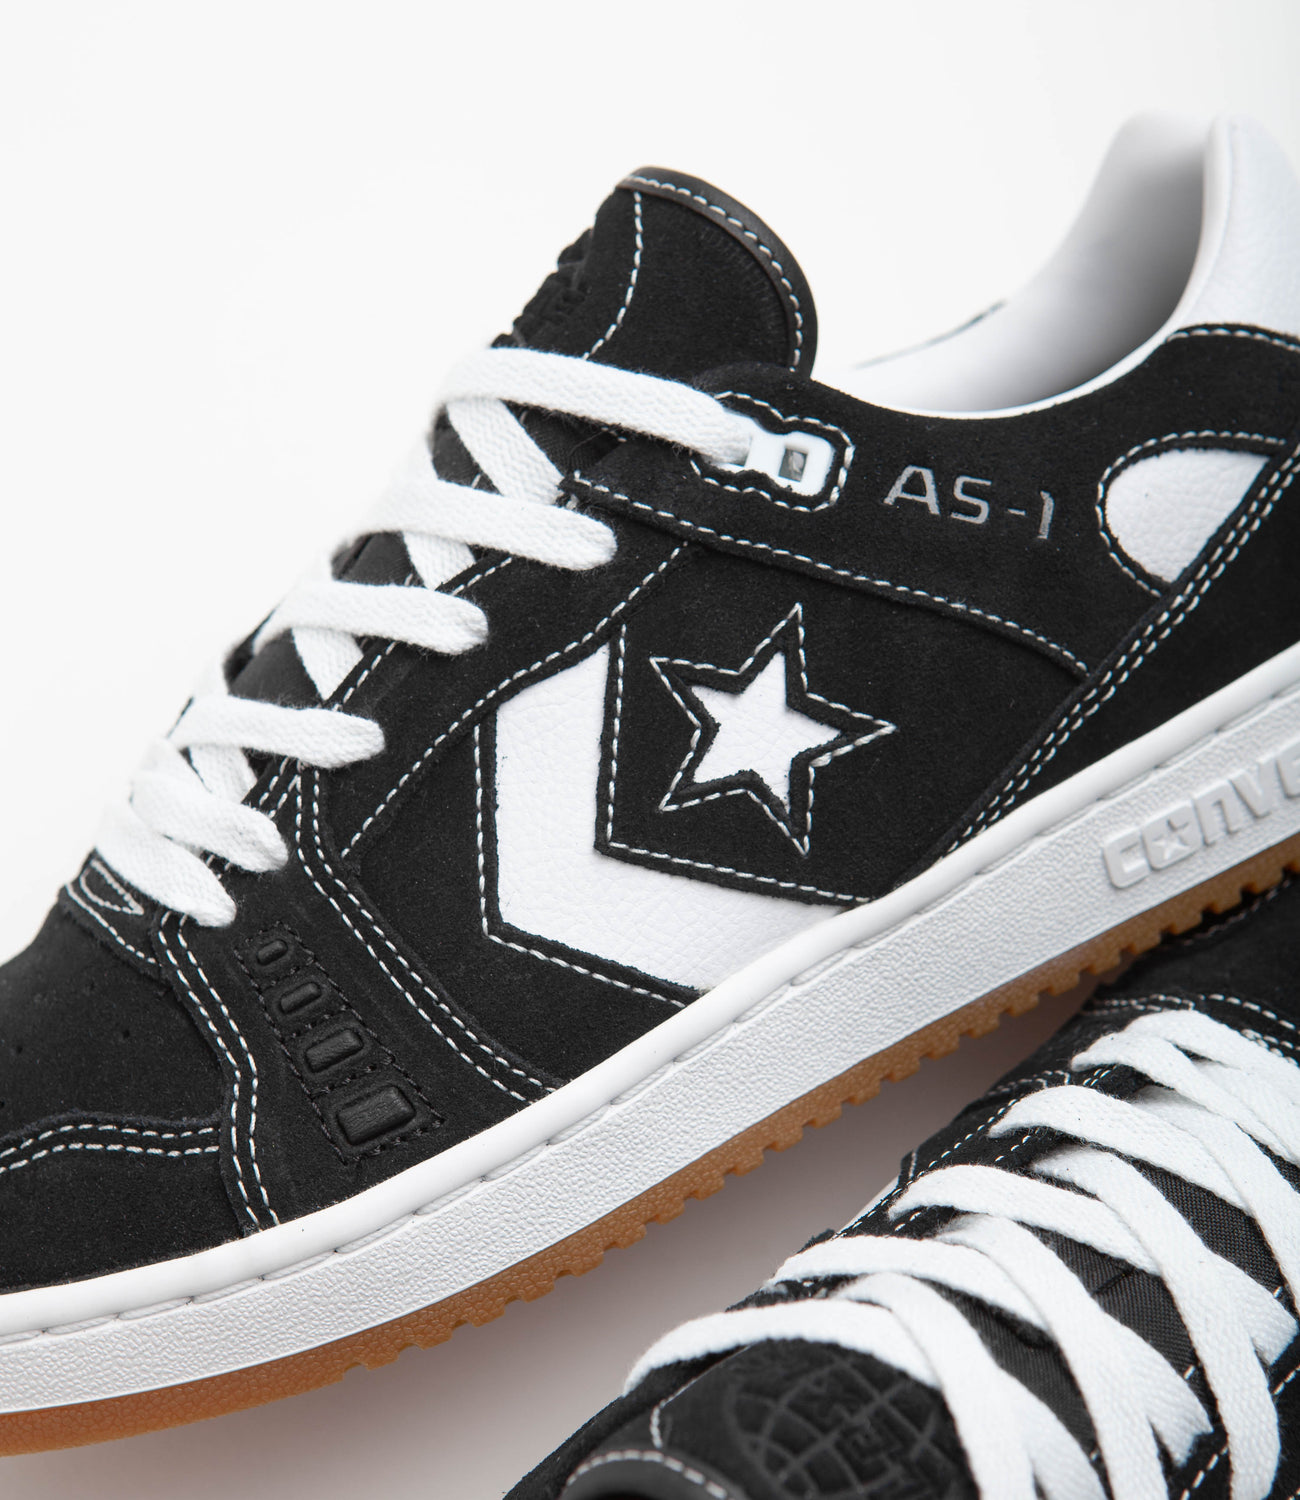 Mere end noget andet overvåge minimum Converse AS-1 Pro Ox Shoes - Black / White / Gum | Flatspot